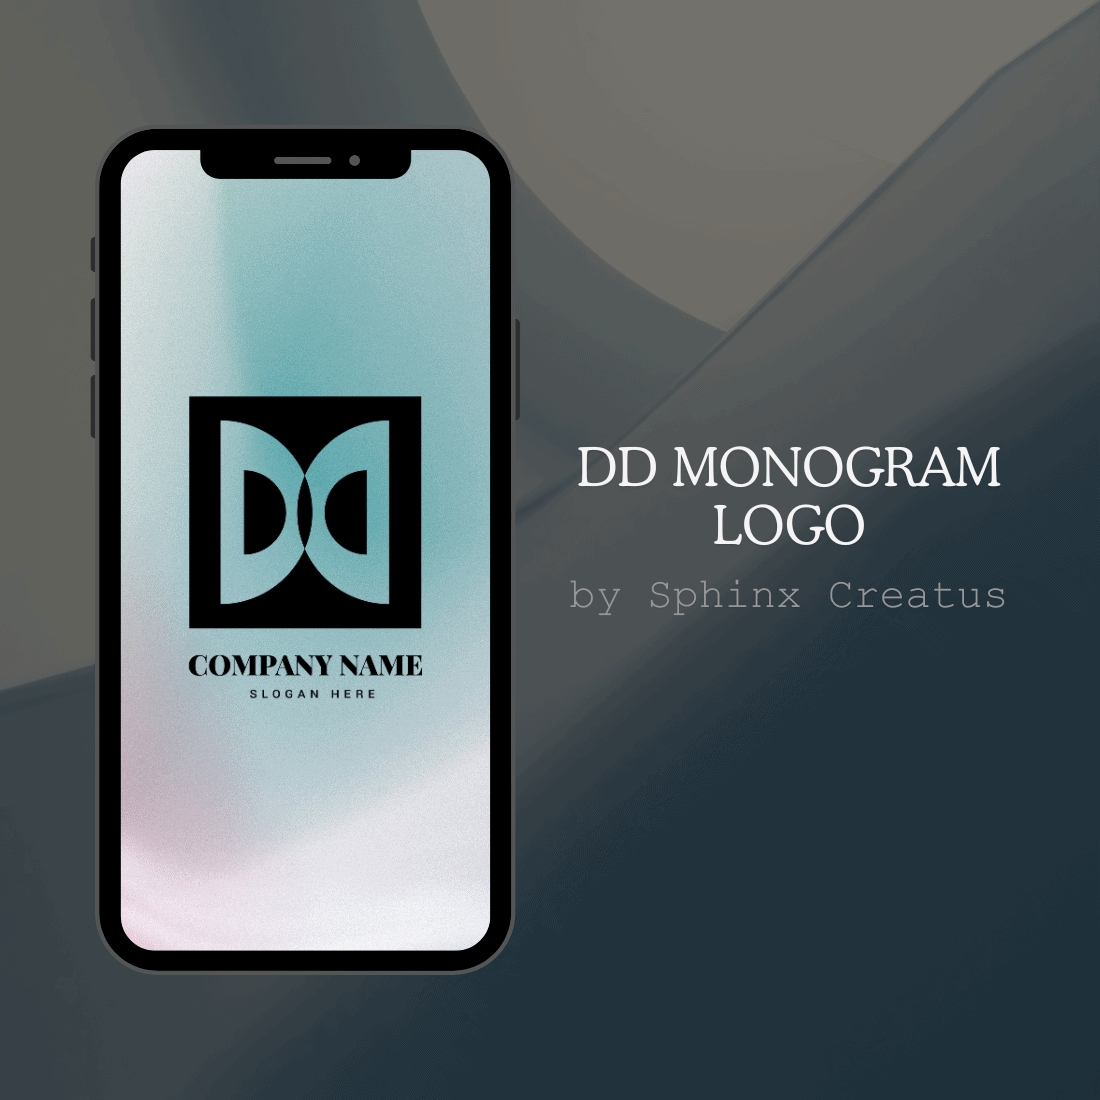 DD Monogram Logo [Sphinx Creatus] cover image.